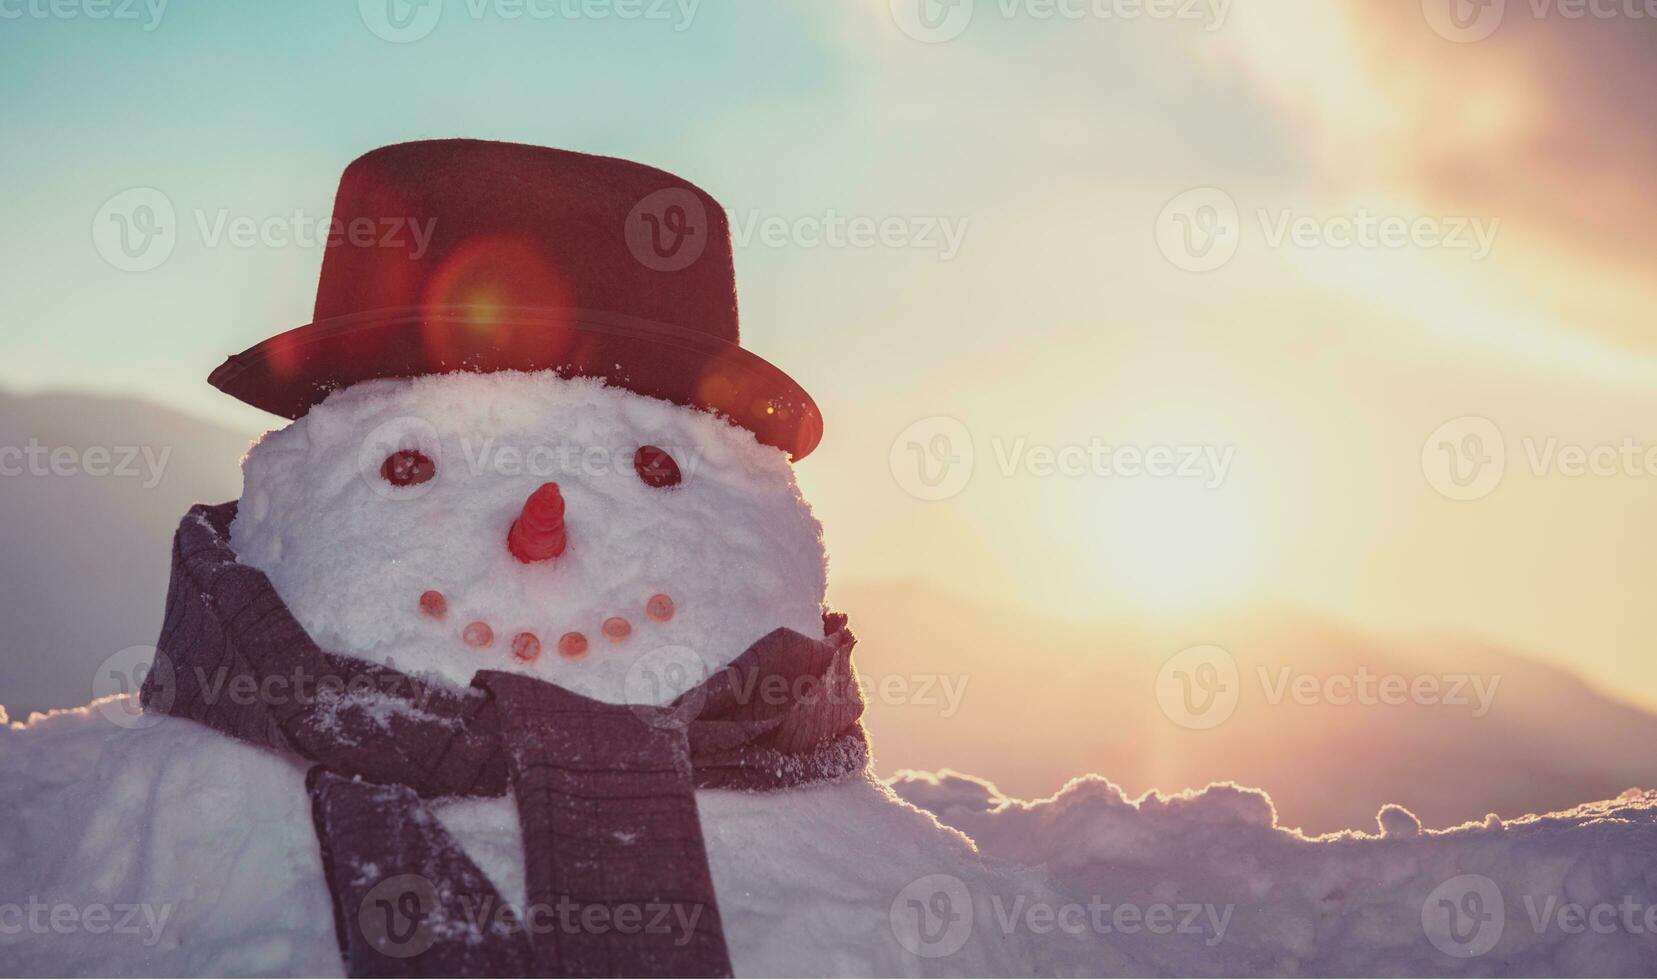 Big cute snowman portrait photo